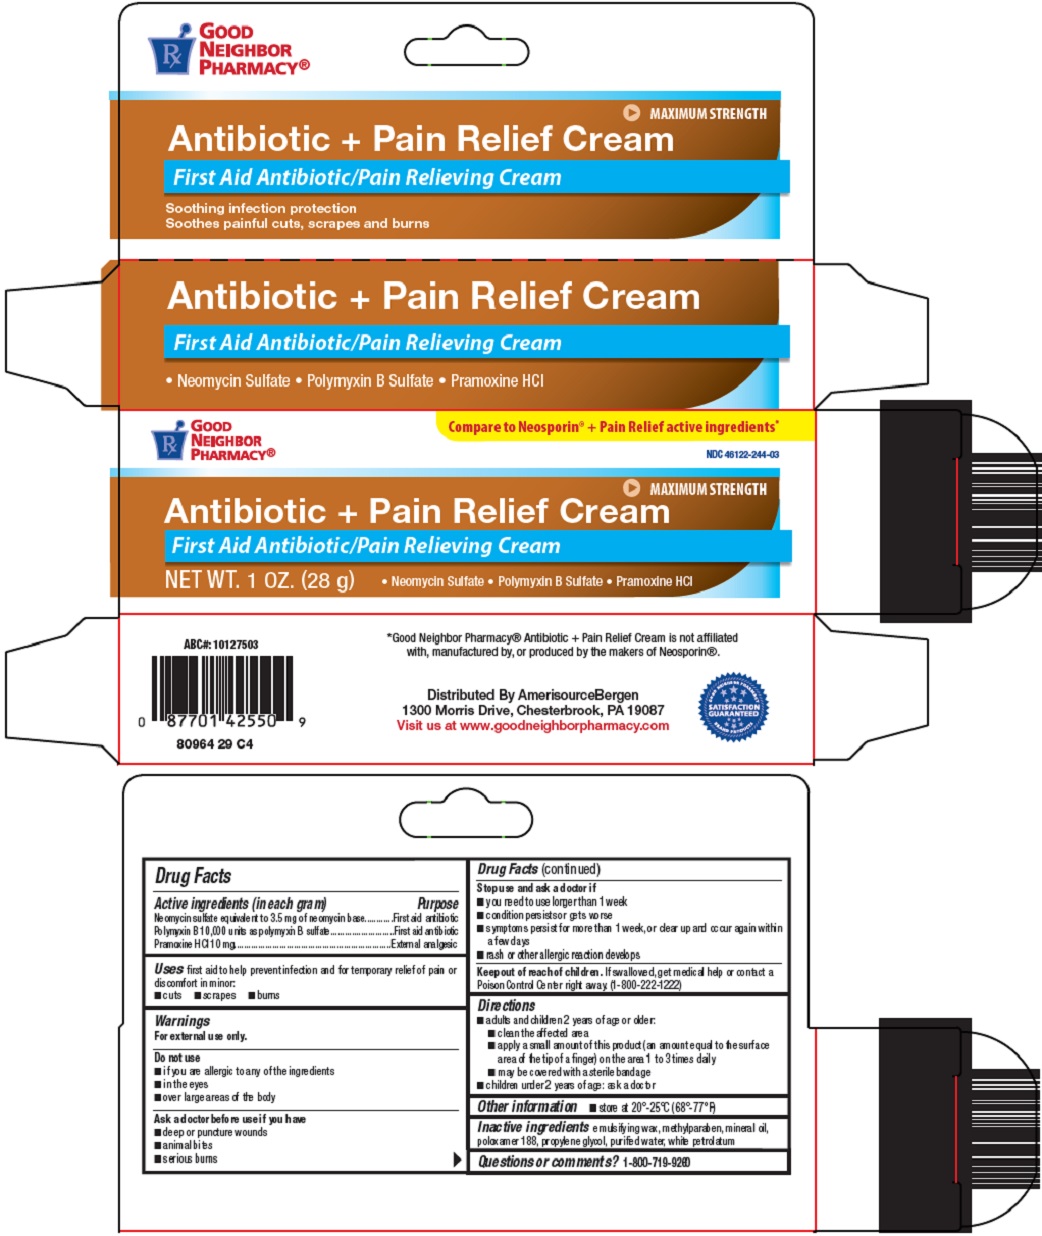 antibiotic-and-pain-relief-cream-image